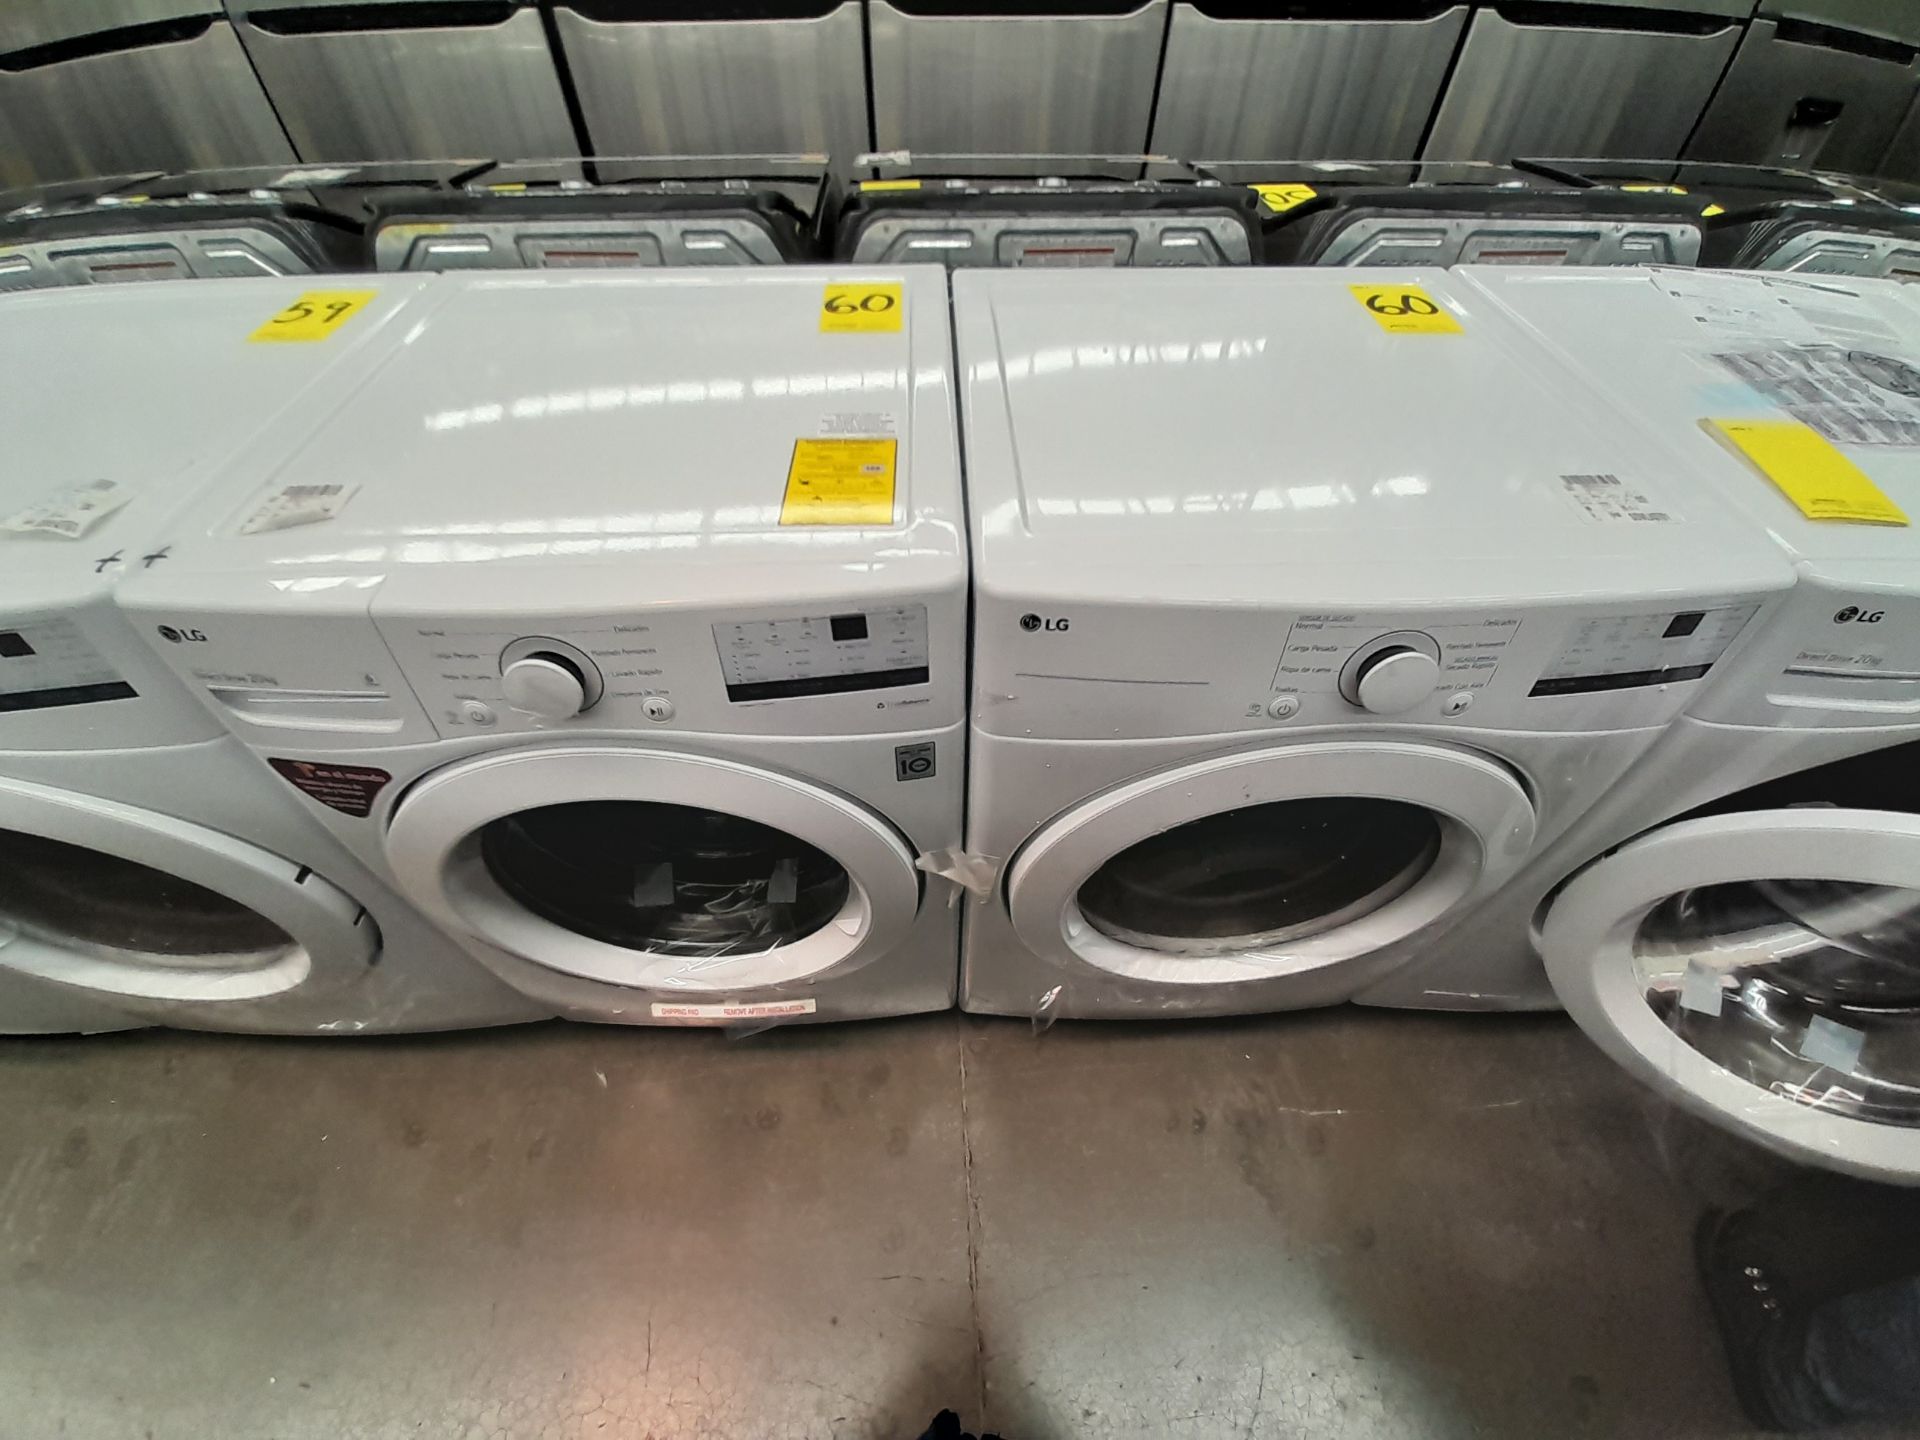 (Nuevo) Lote de 1 lavadora y 1 secadora contiene: 1 lavadora de 20 K, Marca LG, Modelo WN20WV26W, S